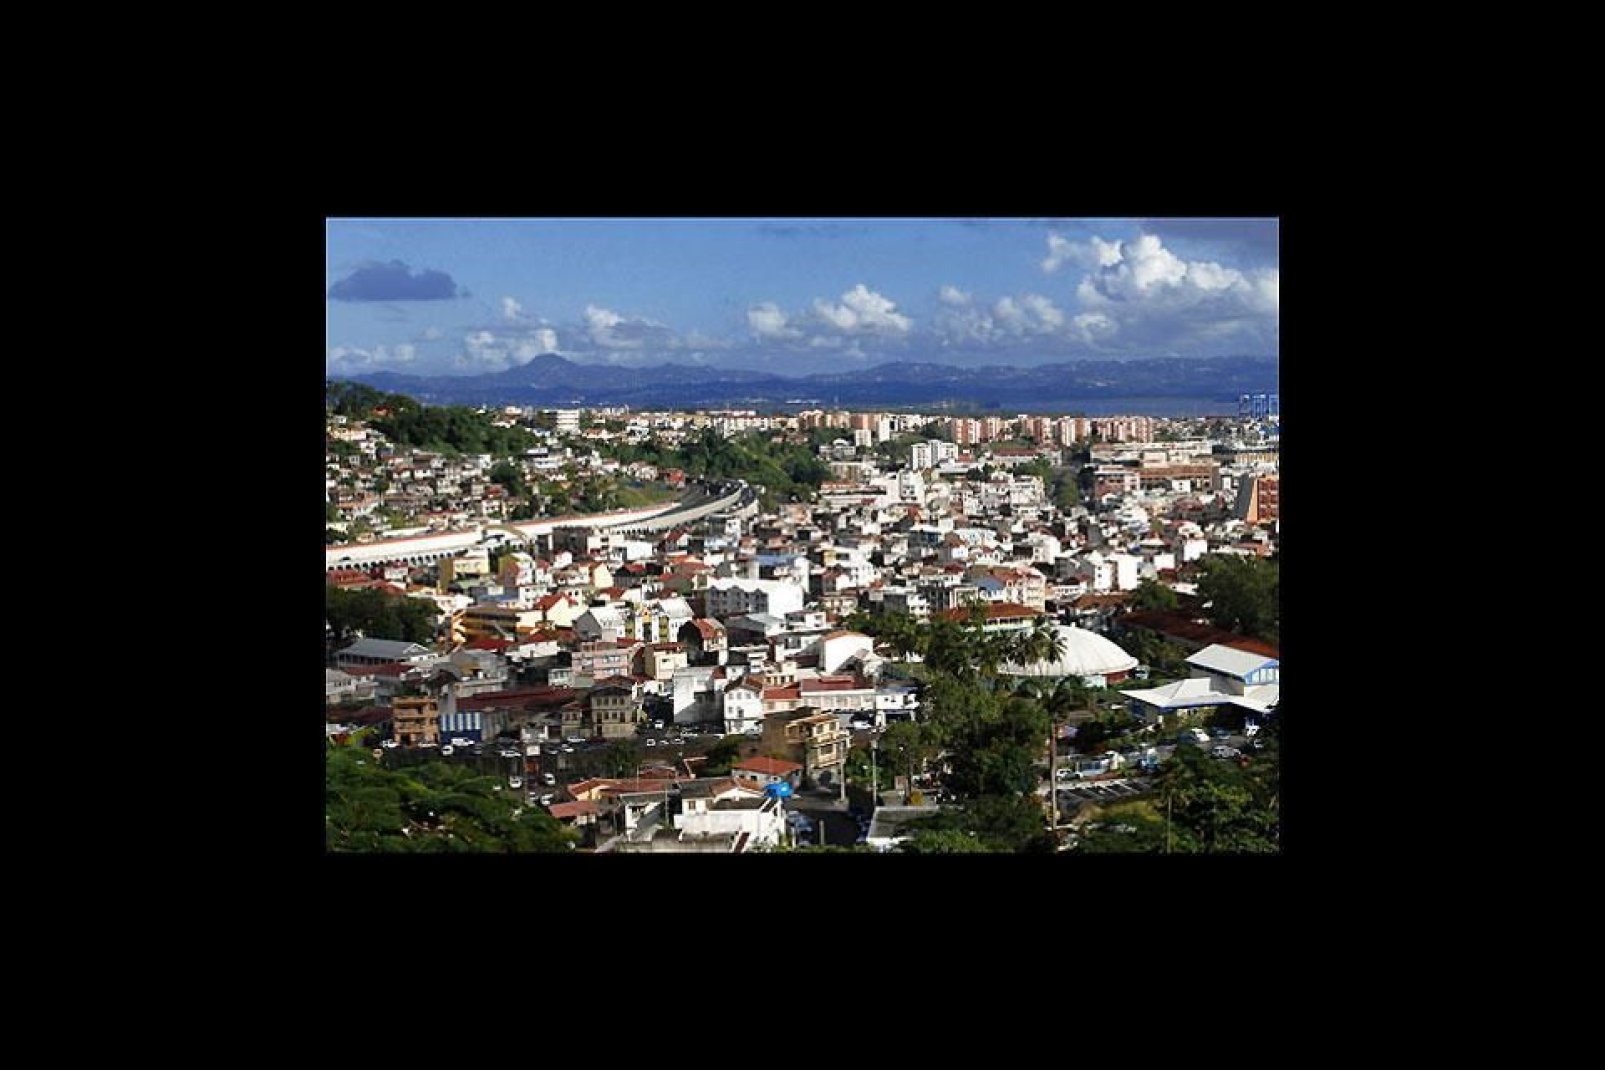 Llamada inicialmente Port-Royal, Fort-de-France es la capital de Martinica desde 1902, tras la destrucción de Saint-Pierre.